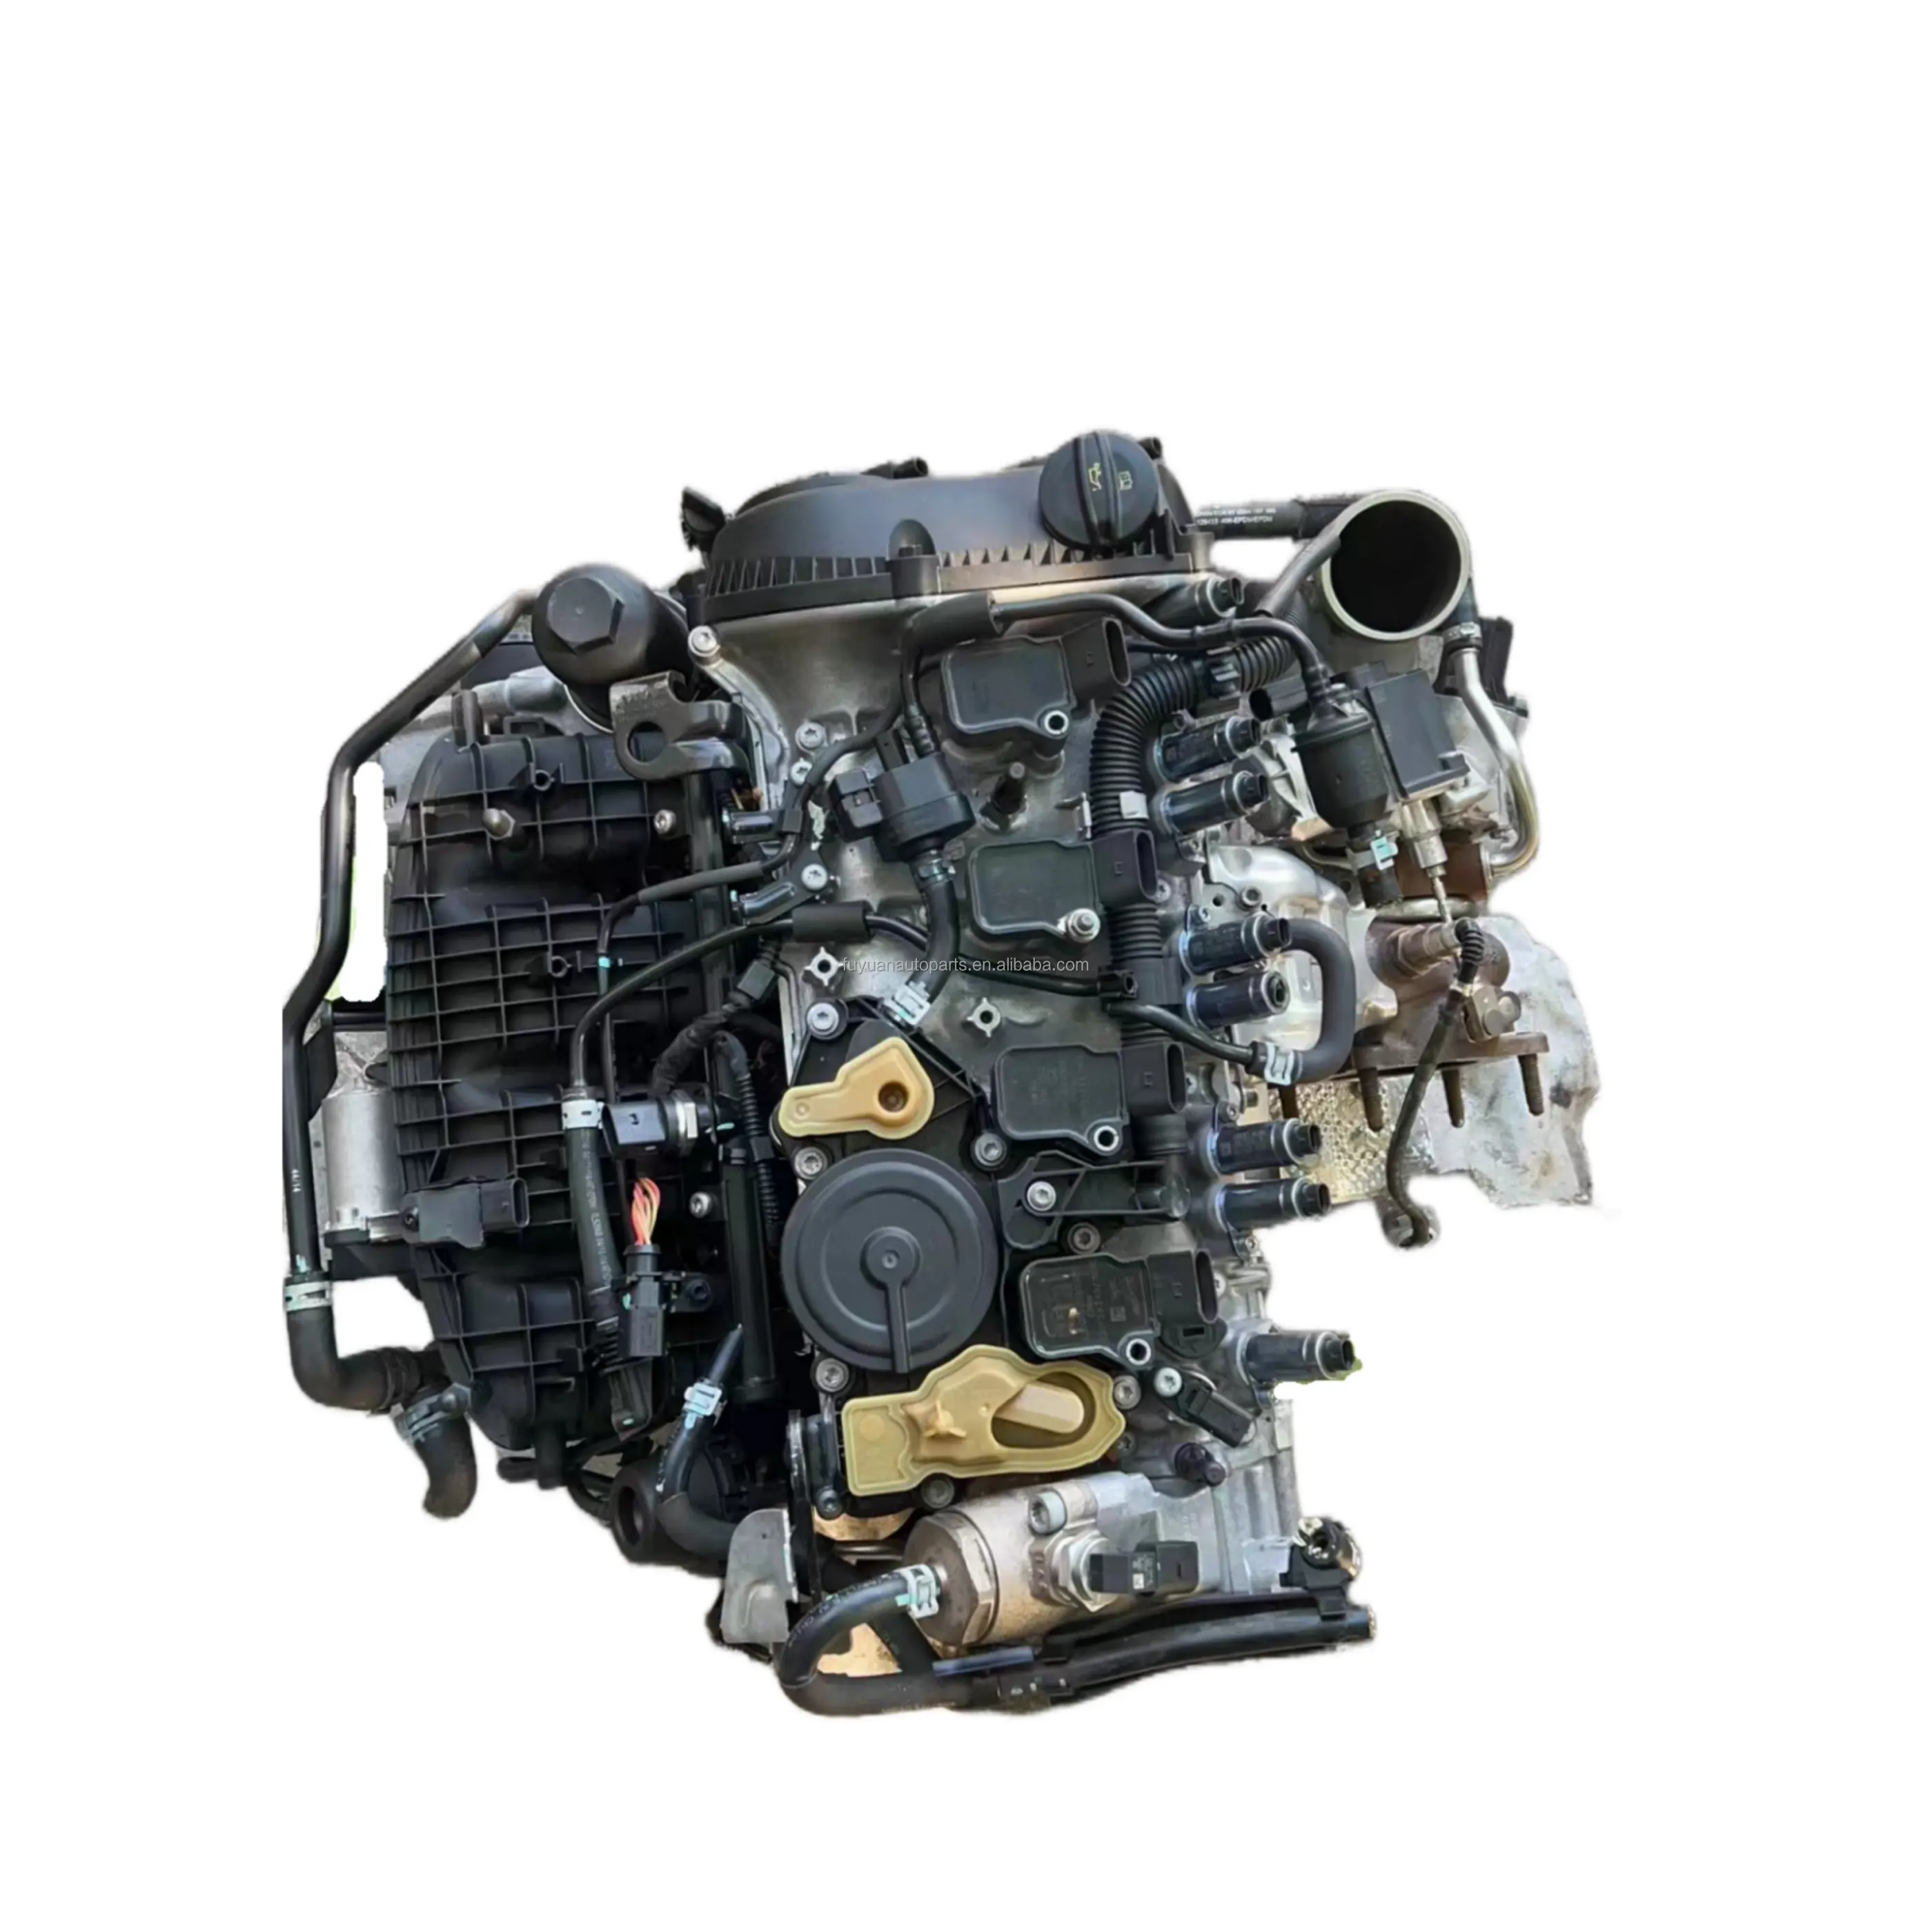 สําหรับ VW AUDI EA888 ใหม่ชุดเทอร์โบชาร์จ 1.8T 1.9T A4 A6 A3 A5 A7 Q3 Q5 Gen 3 เครื่องยนต์ประกอบชิ้นส่วนรถยนต์เครื่องยนต์ที่สมบูรณ์